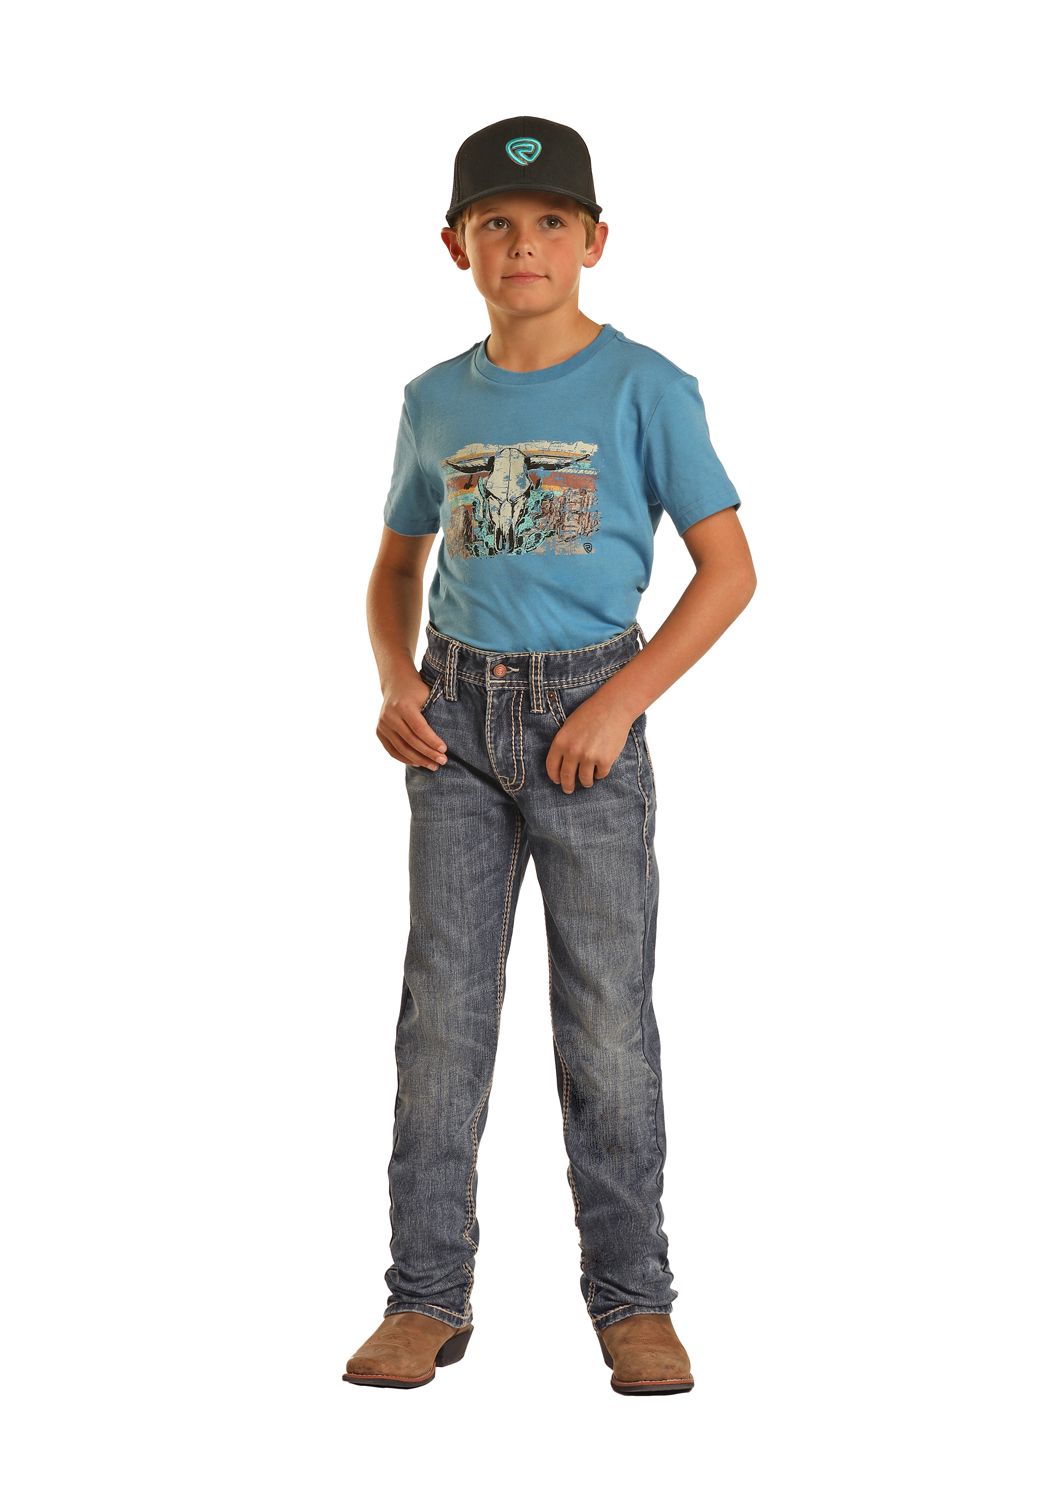 Boys Boot Cut Medium Vintage Rock Roll Cowboy Jeans